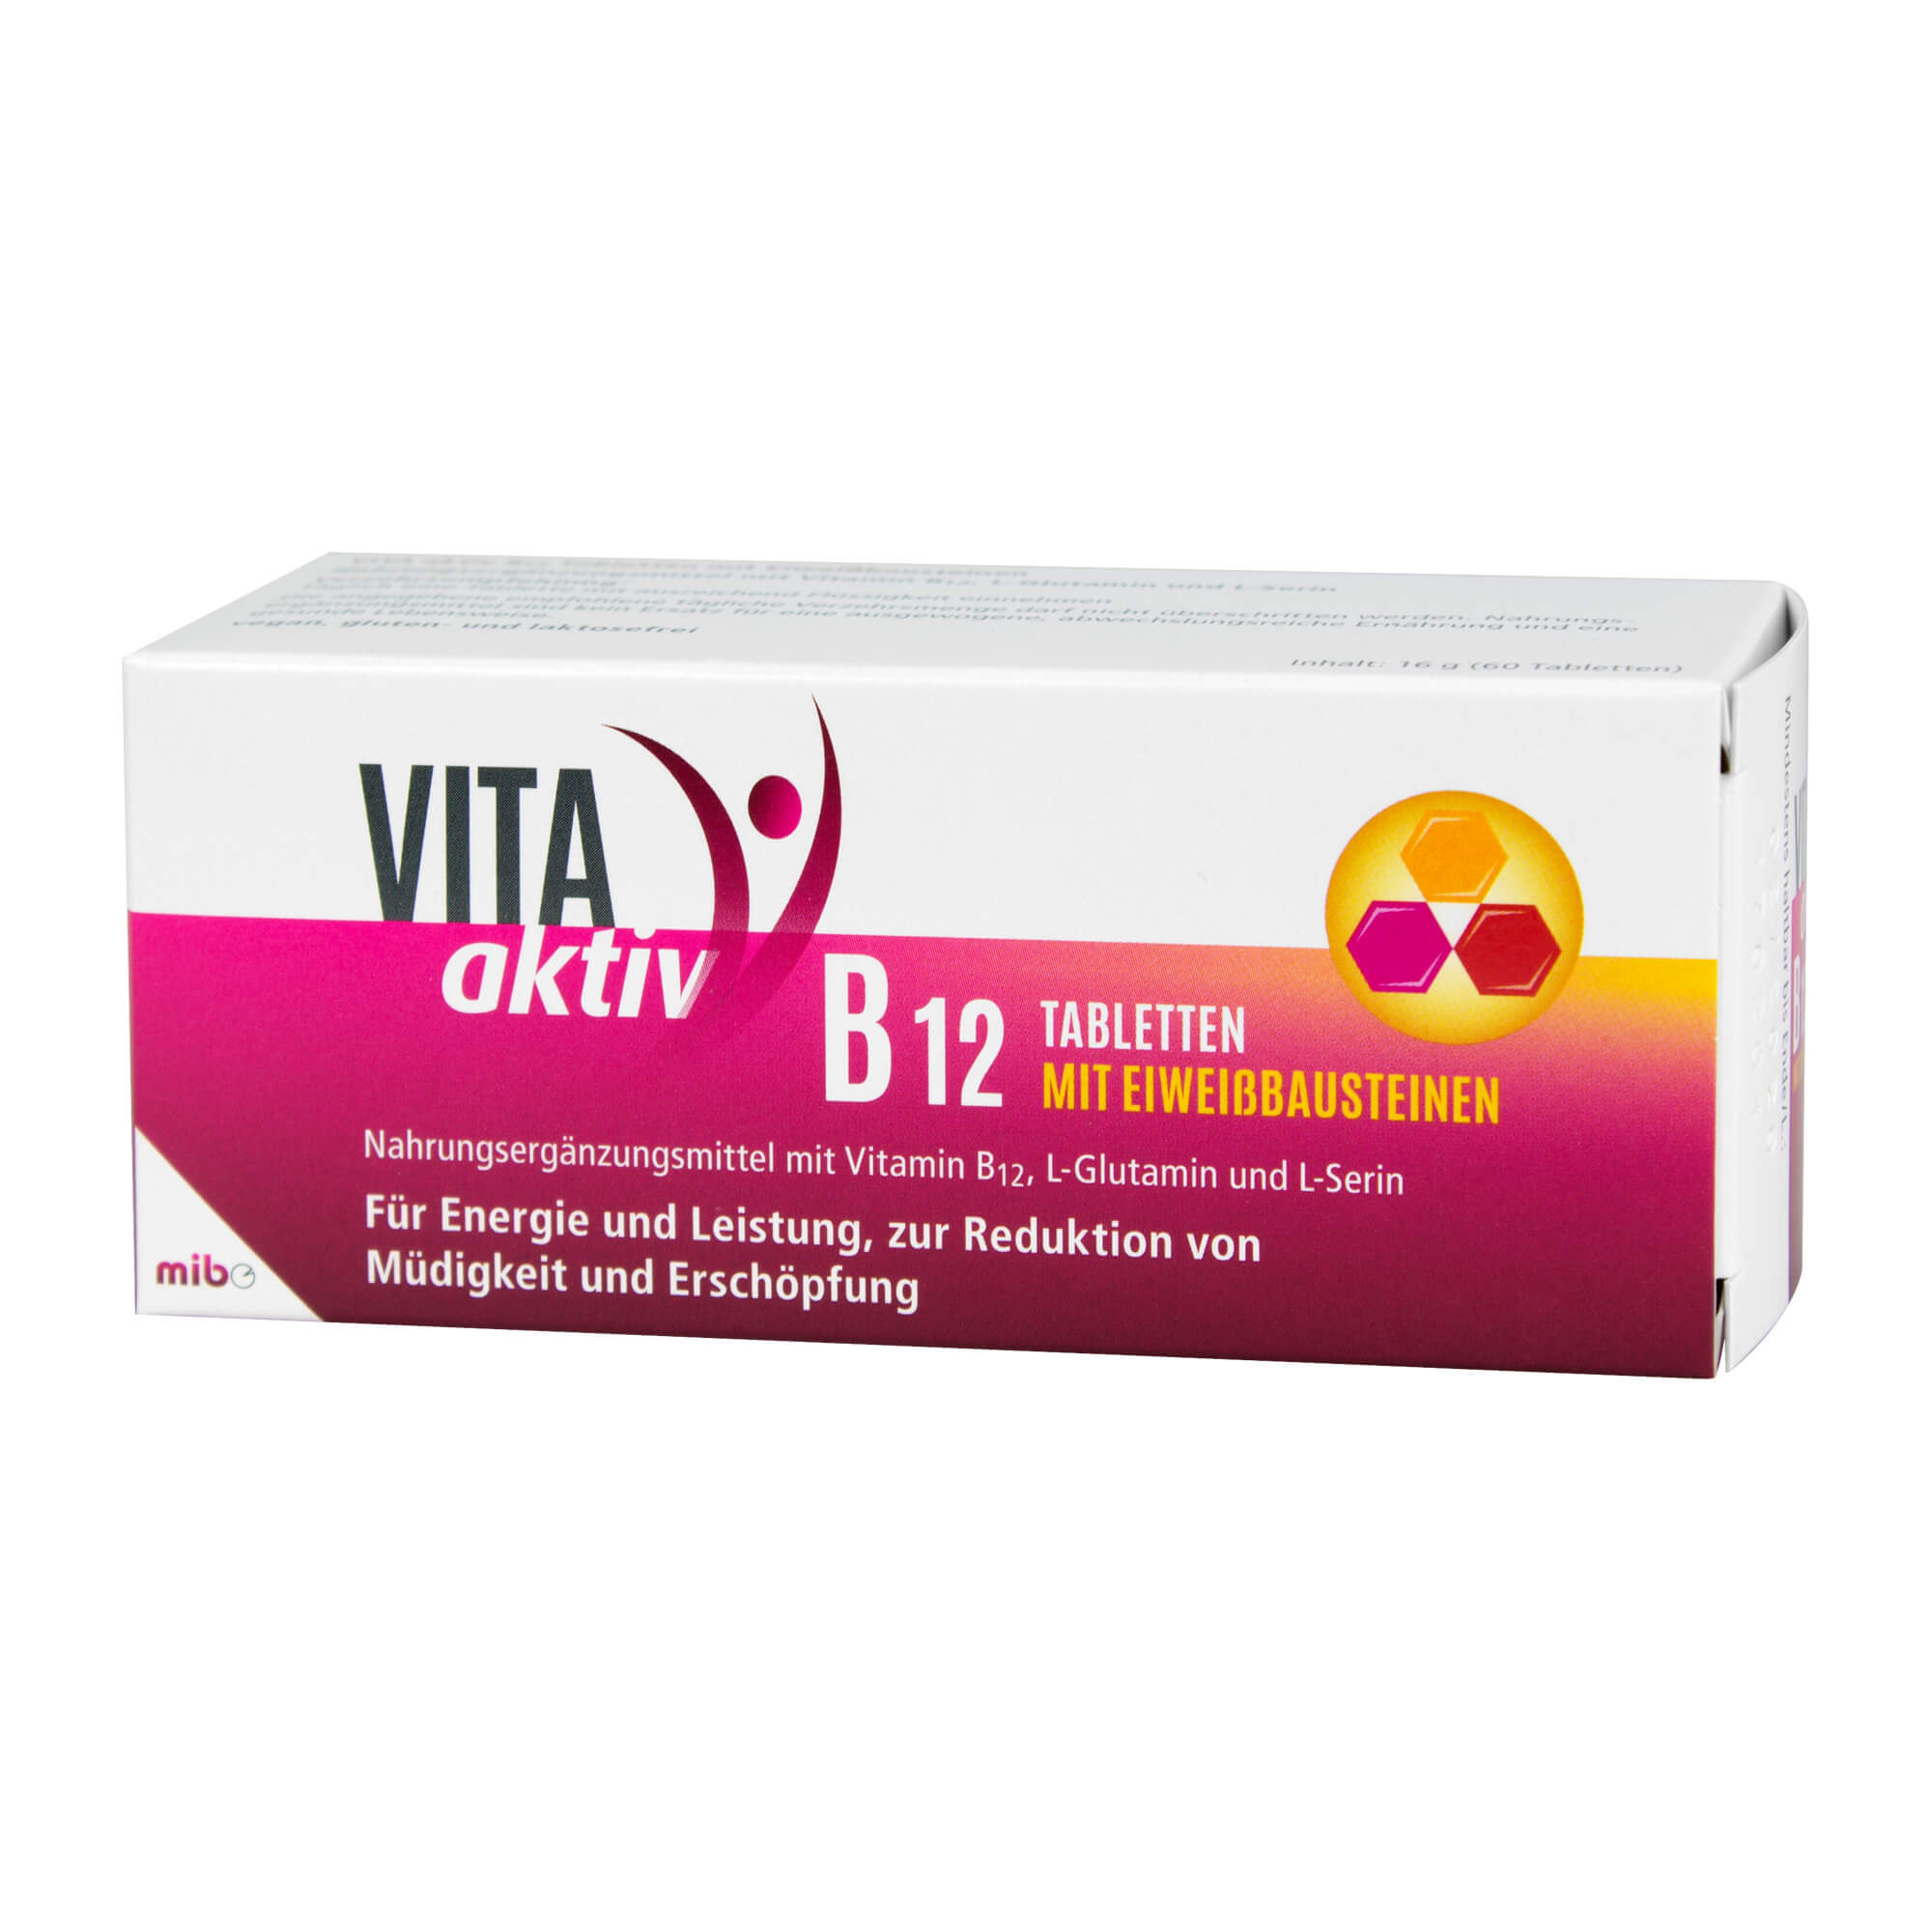 Nahrungsergänzungsmittel mit Vitamin B12, L-Glutamin und L-Serin.